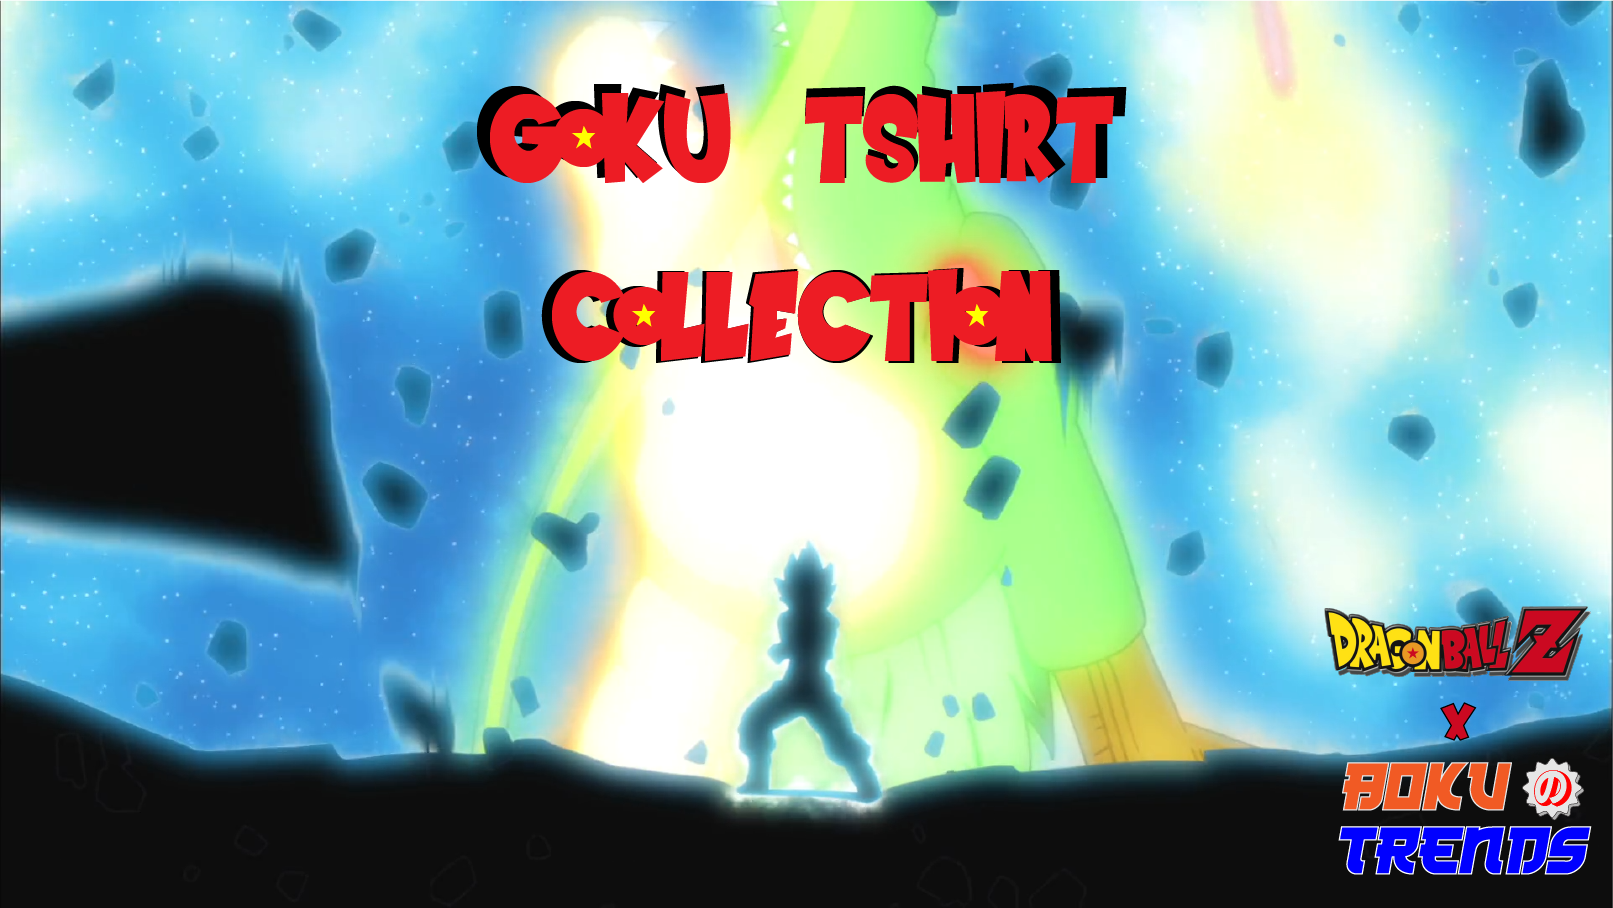 Goku Tshirt Collection on Boku No Trends